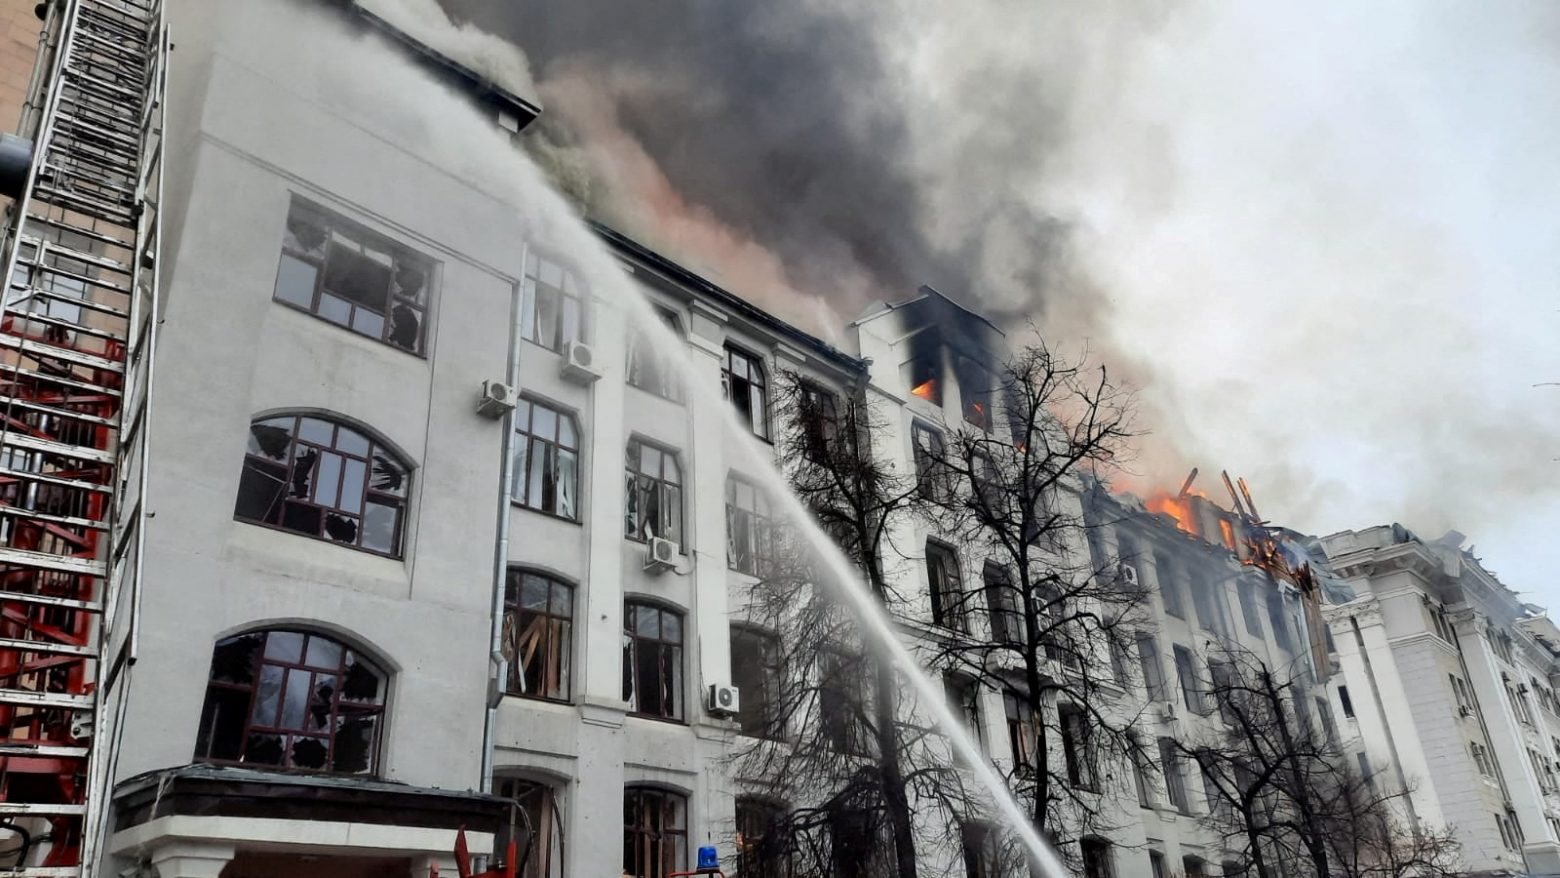 Ουκρανία: Μαίνεται για 9η μέρα ο πόλεμος - Βομβαρδισμοί σε Κίεβο, Χάρκοβο, Μαριούπολη, αυξάνονται οι νεκροί άμαχοι